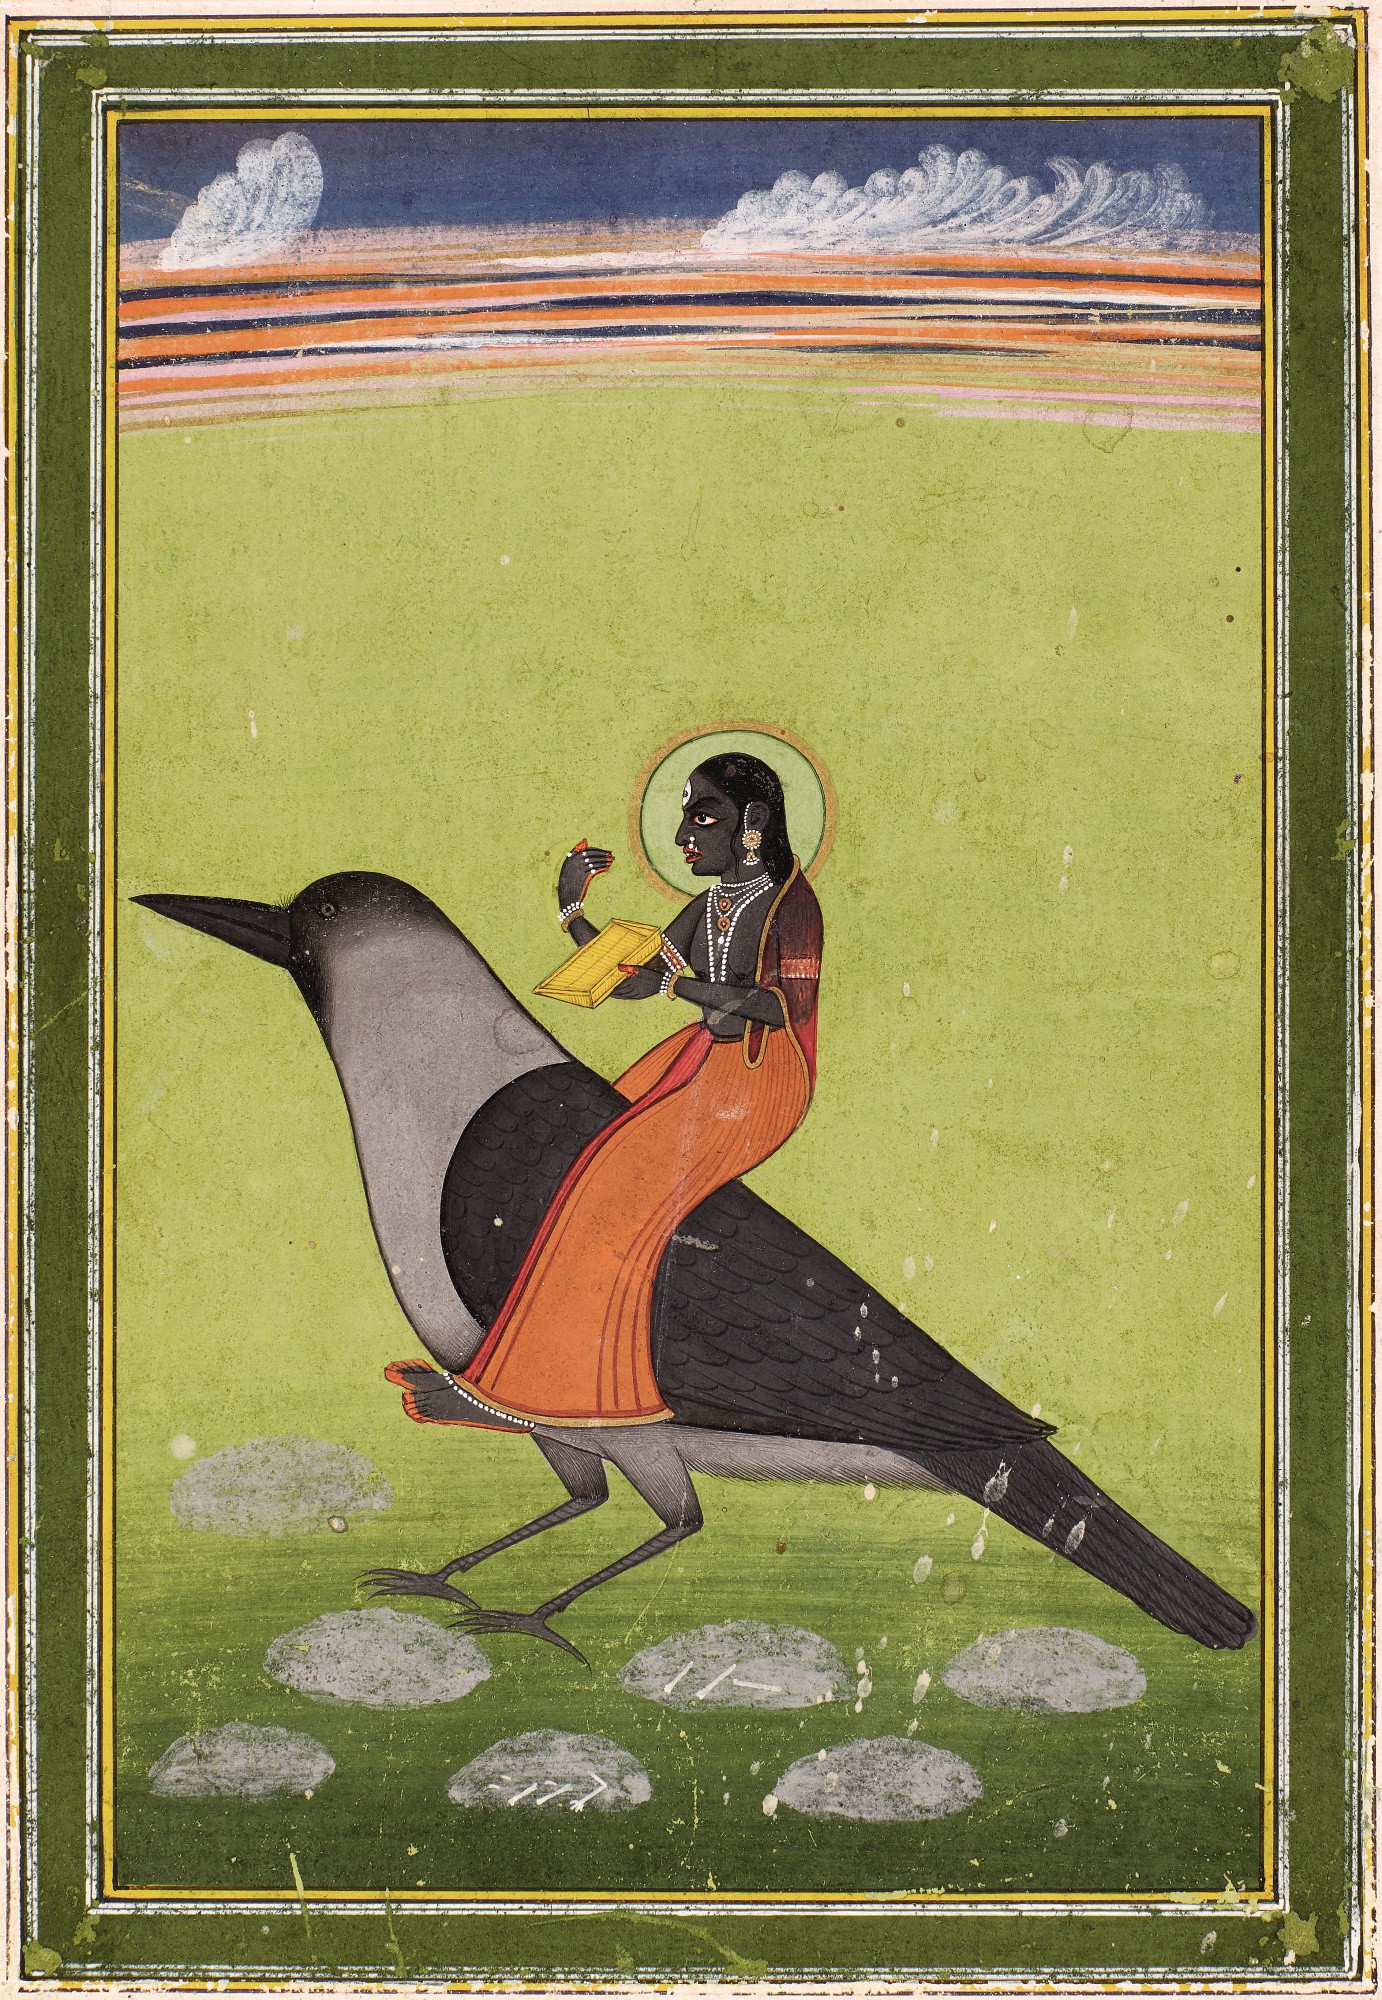 Dhumavati num Corvo by Artista Desconhecido - Aprox. 1830 - 22.2 x 13.3 cm coleção privada